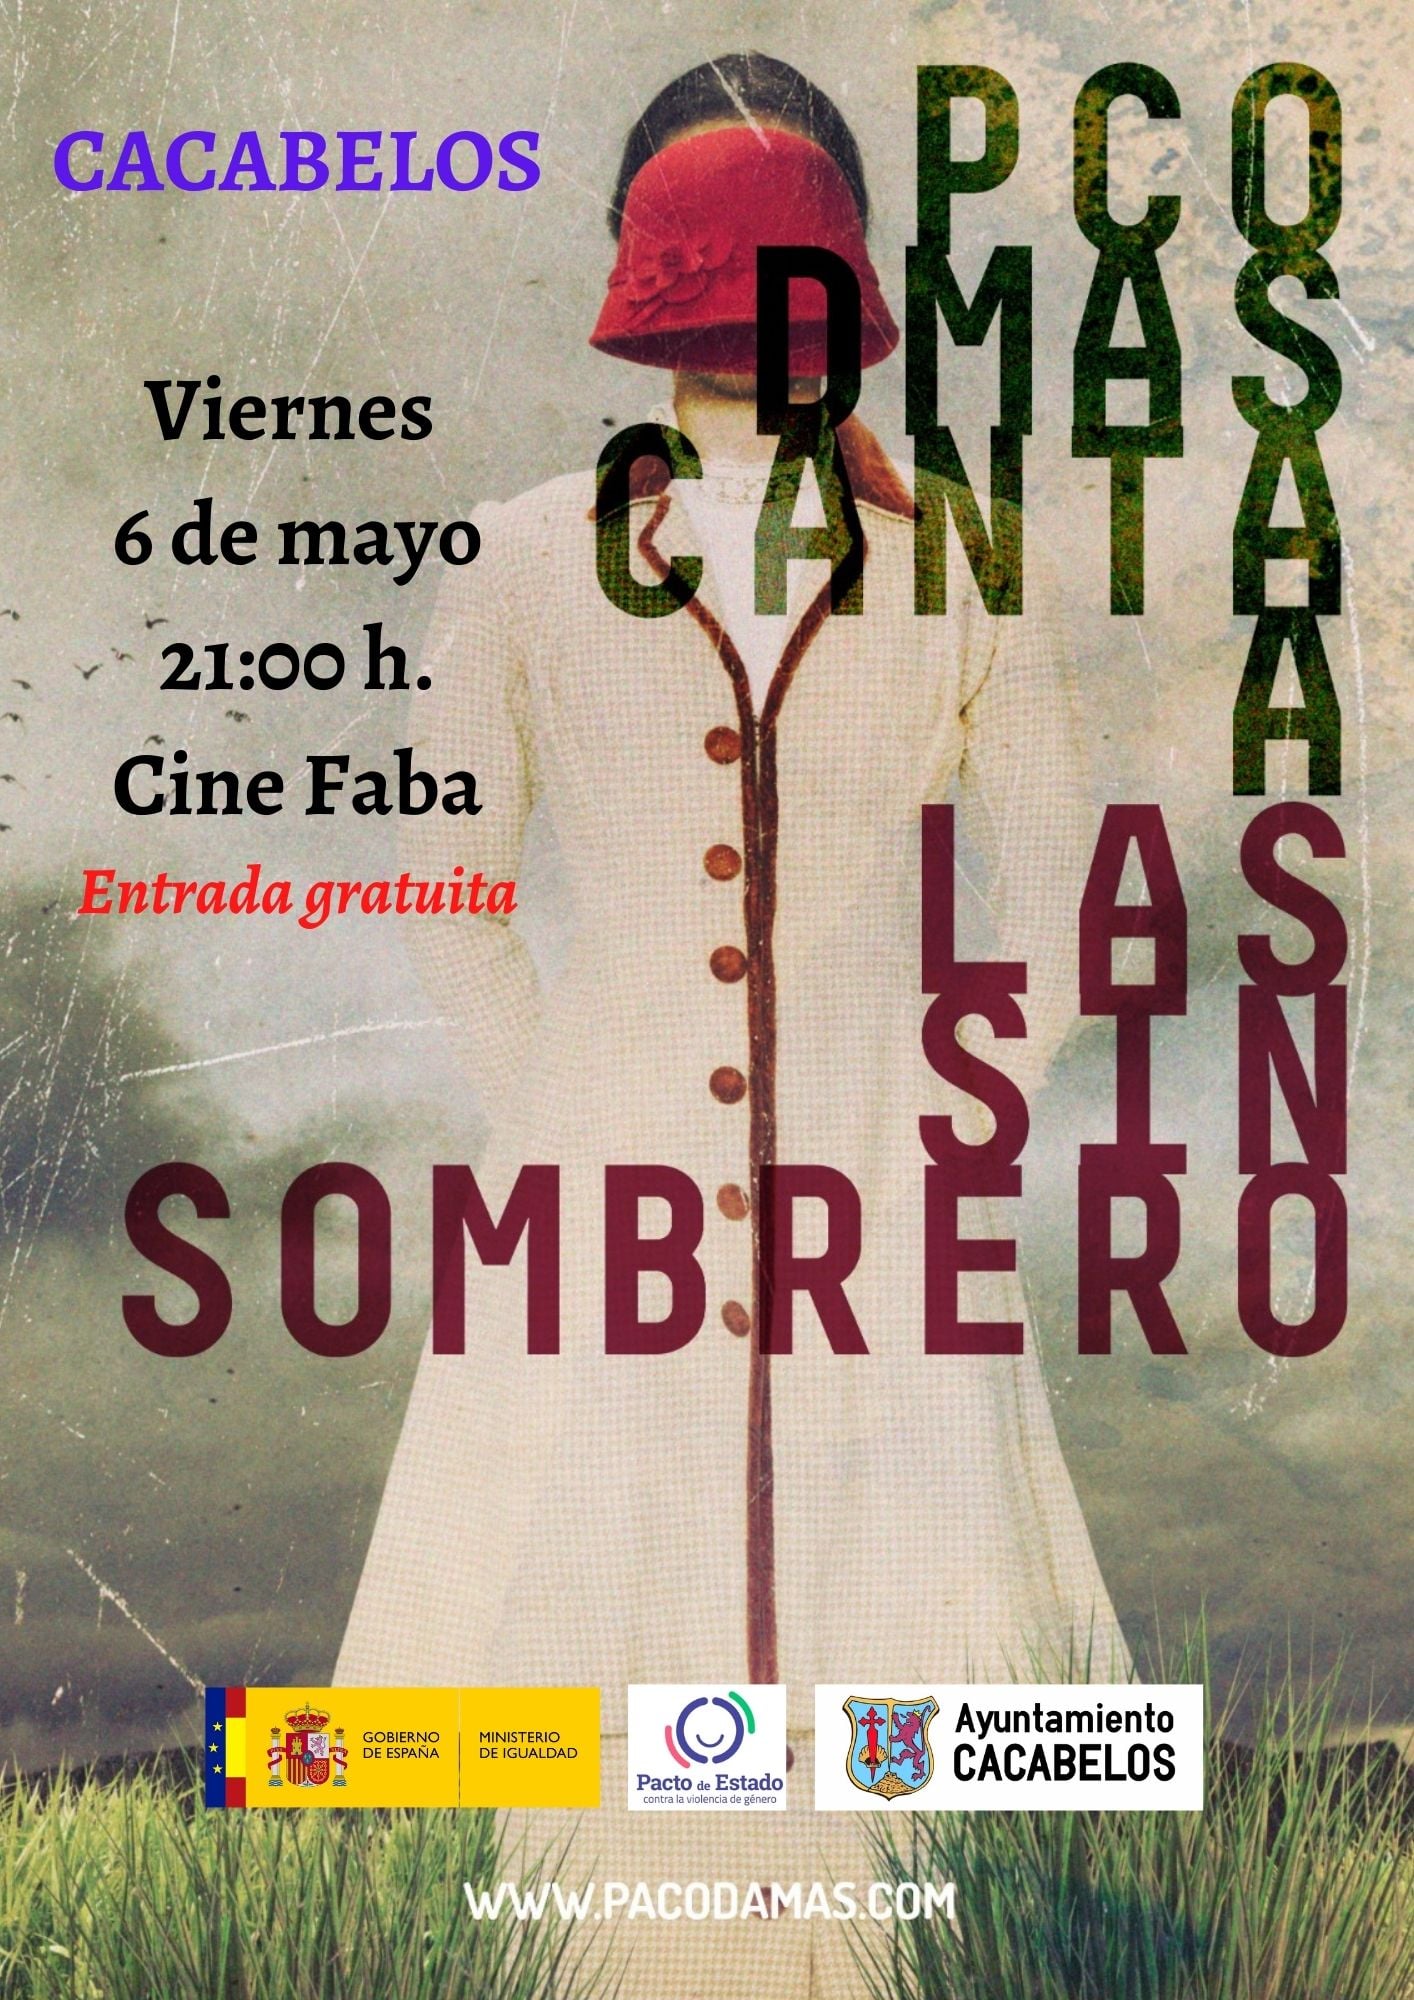 "Paco Damas canta a las Sinsombrero" el próximo 6 de mayo en Cacabelos 2